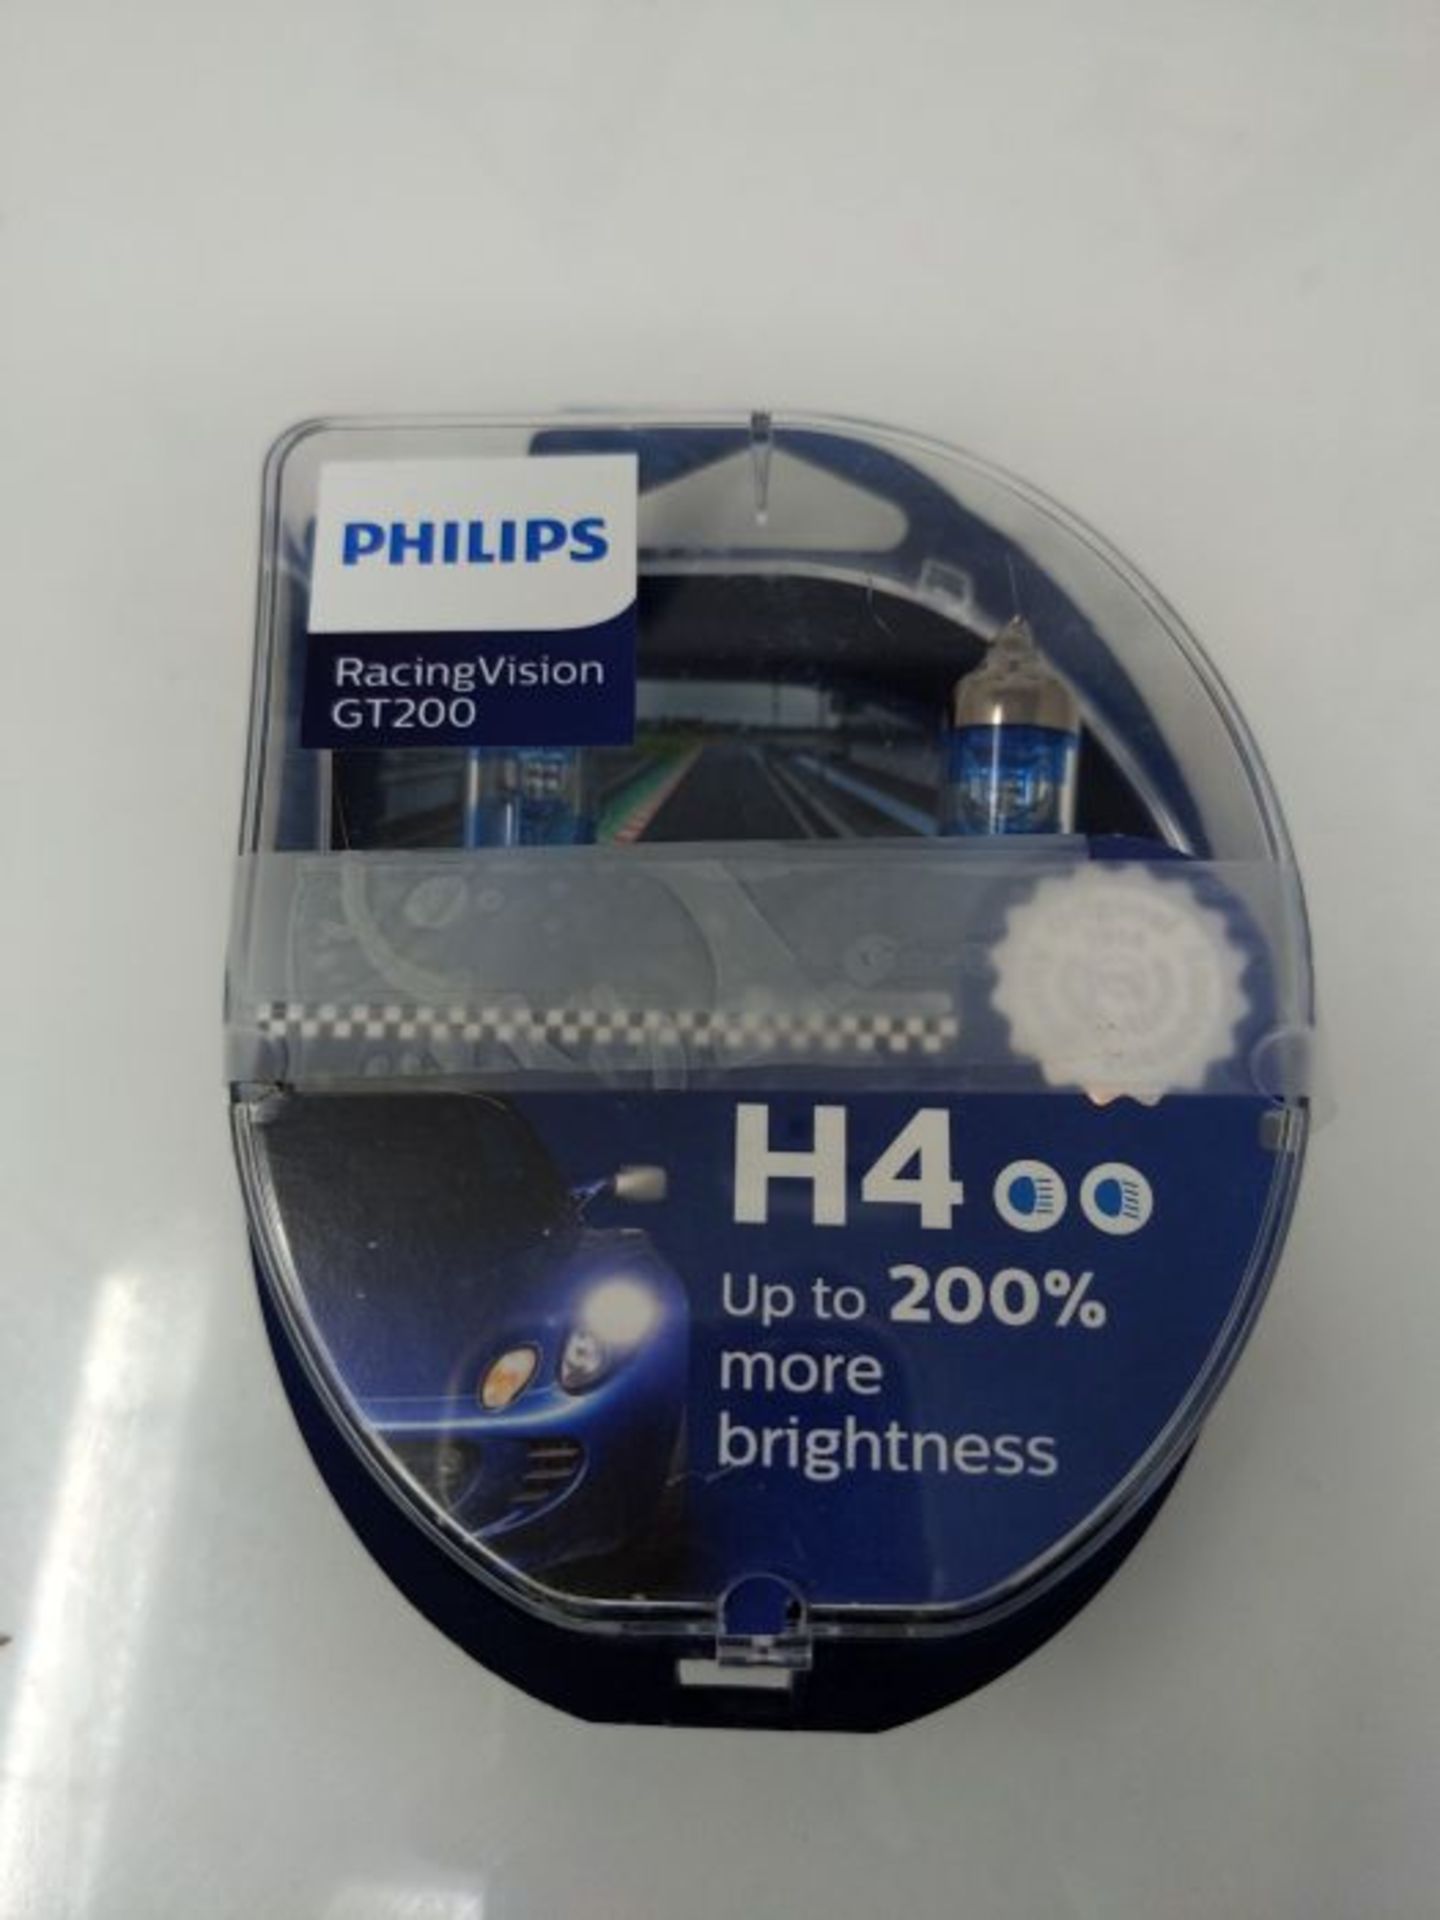 Philips RacingVision GT200 H4 lampadina fari auto +200%, confezione doppia - Image 2 of 3